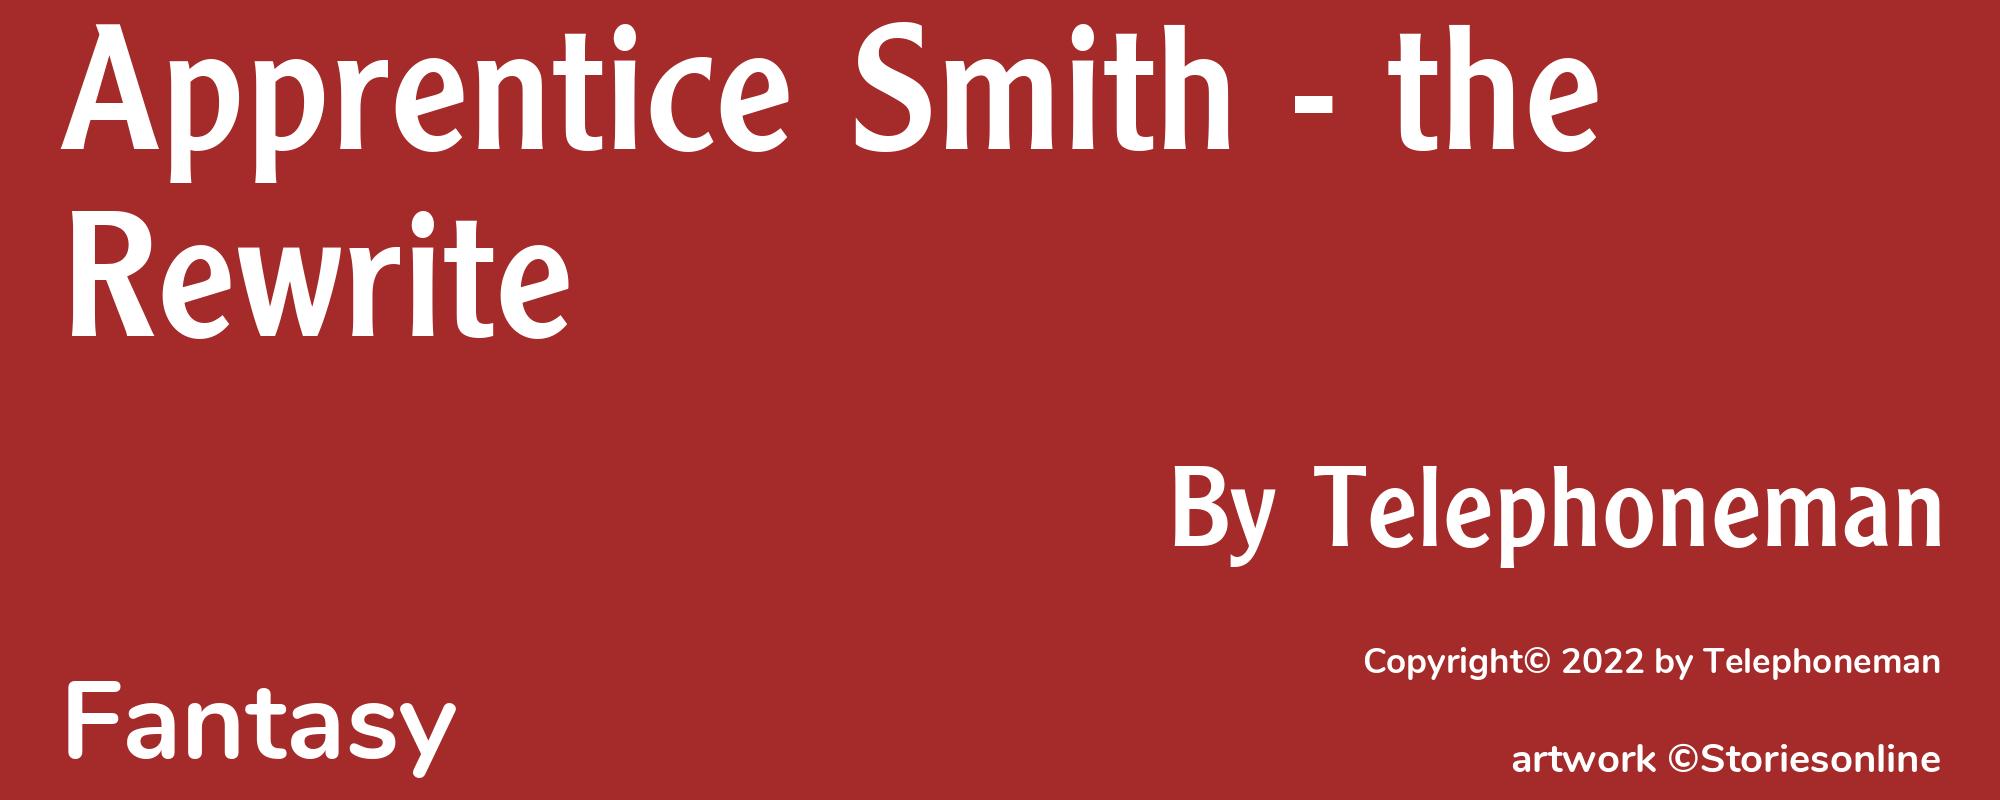 Apprentice Smith - the Rewrite - Cover